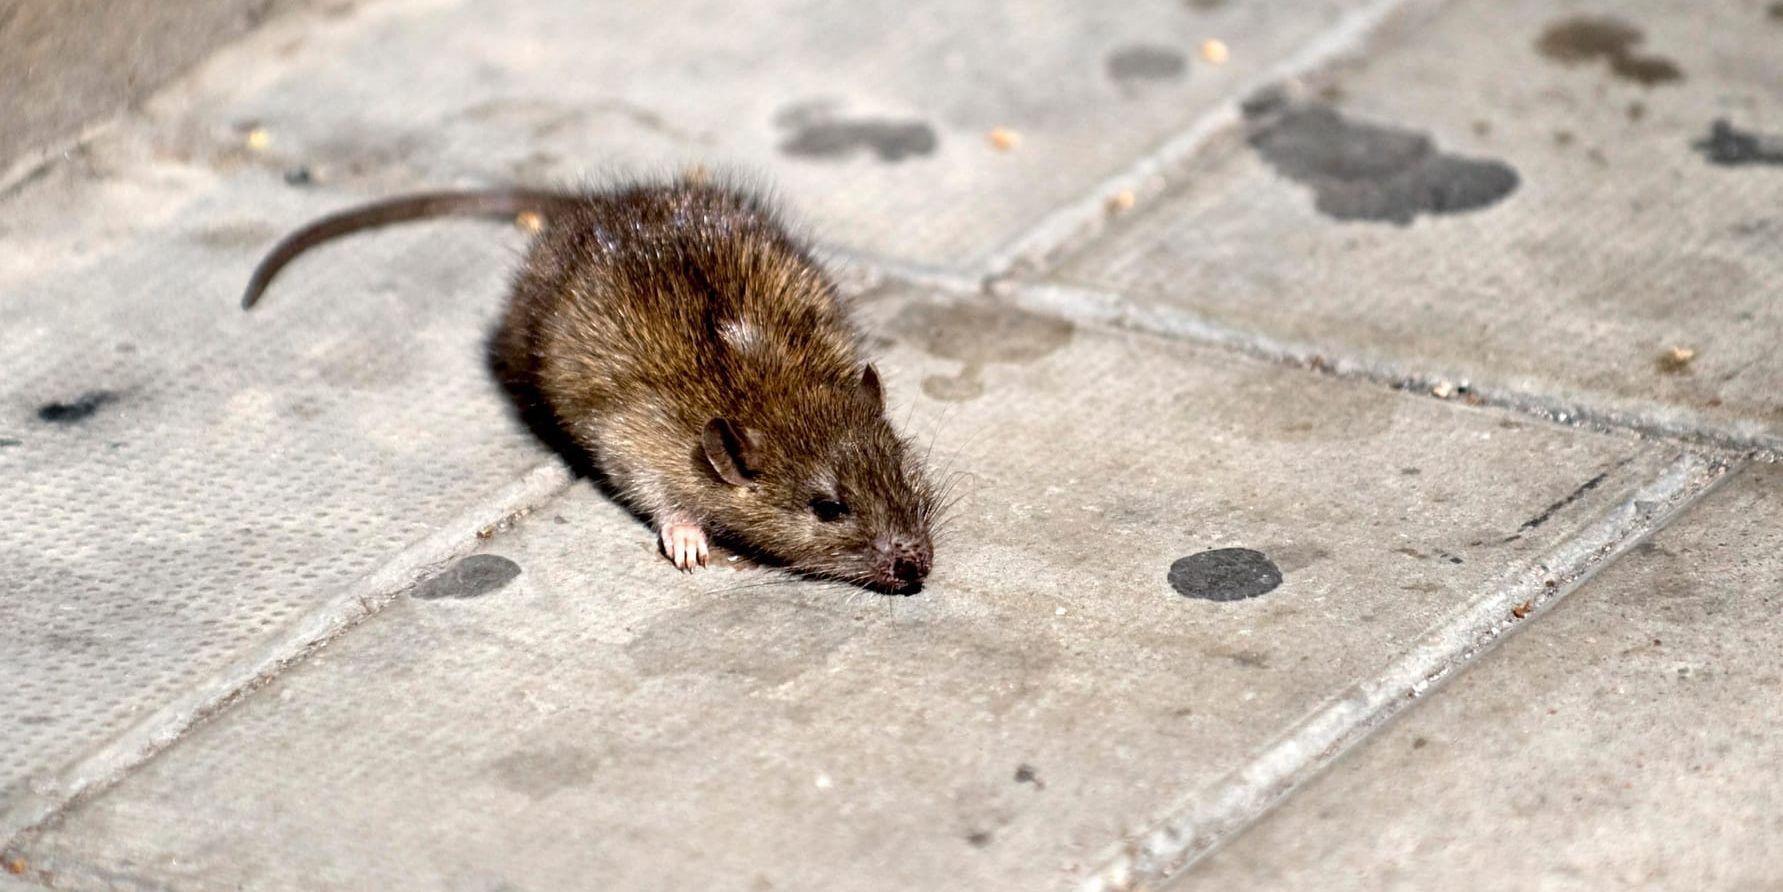 Vid en inspektion hos en matgrossist i Småland upptäcktes råttor samt råttspillning i lokalen. Bajset tros ha orsakat fall av matförgiftning. Arkivbild.